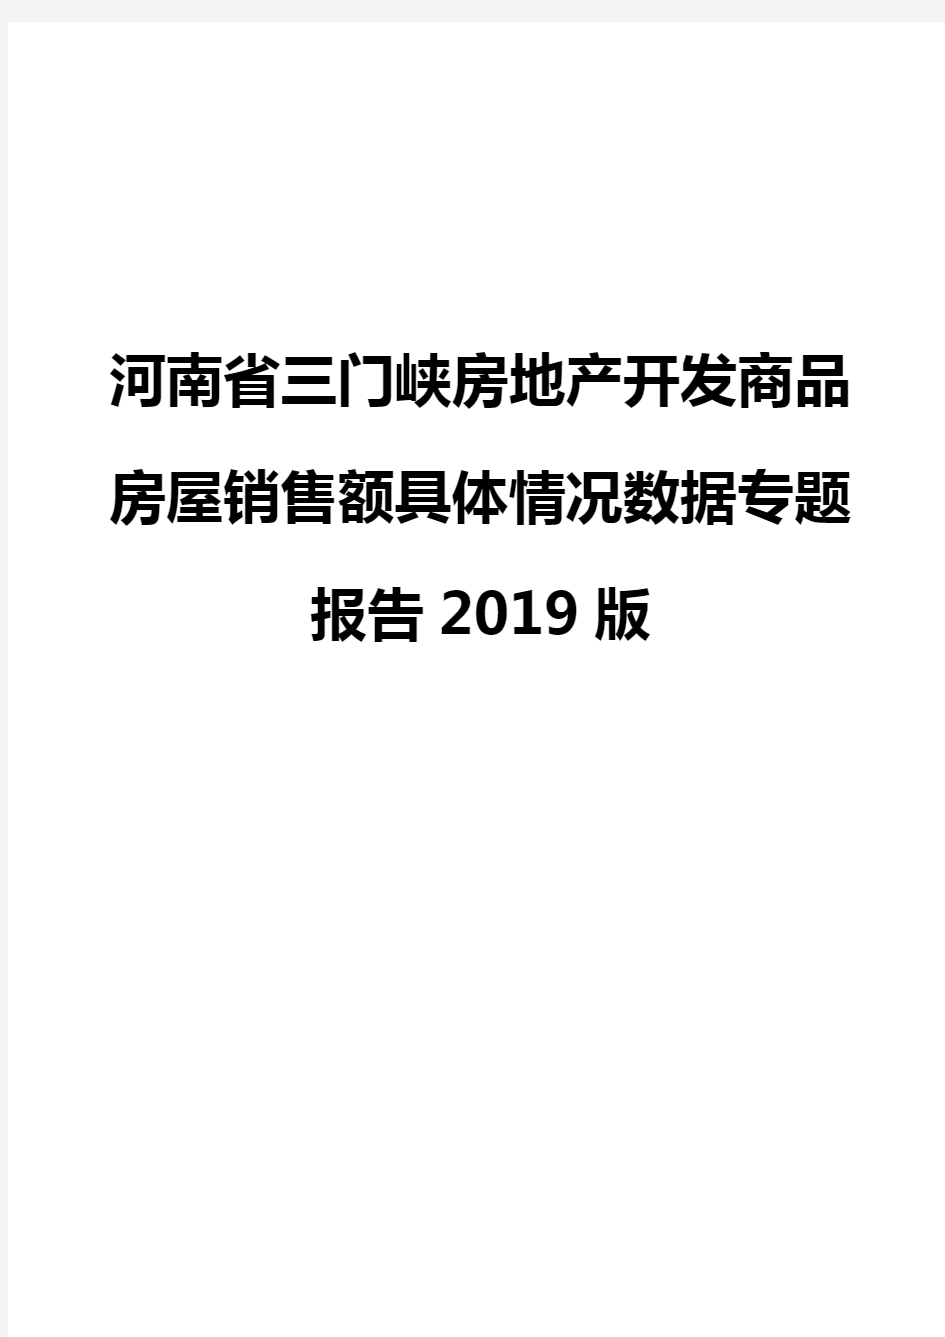 河南省三门峡房地产开发商品房屋销售额具体情况数据专题报告2019版